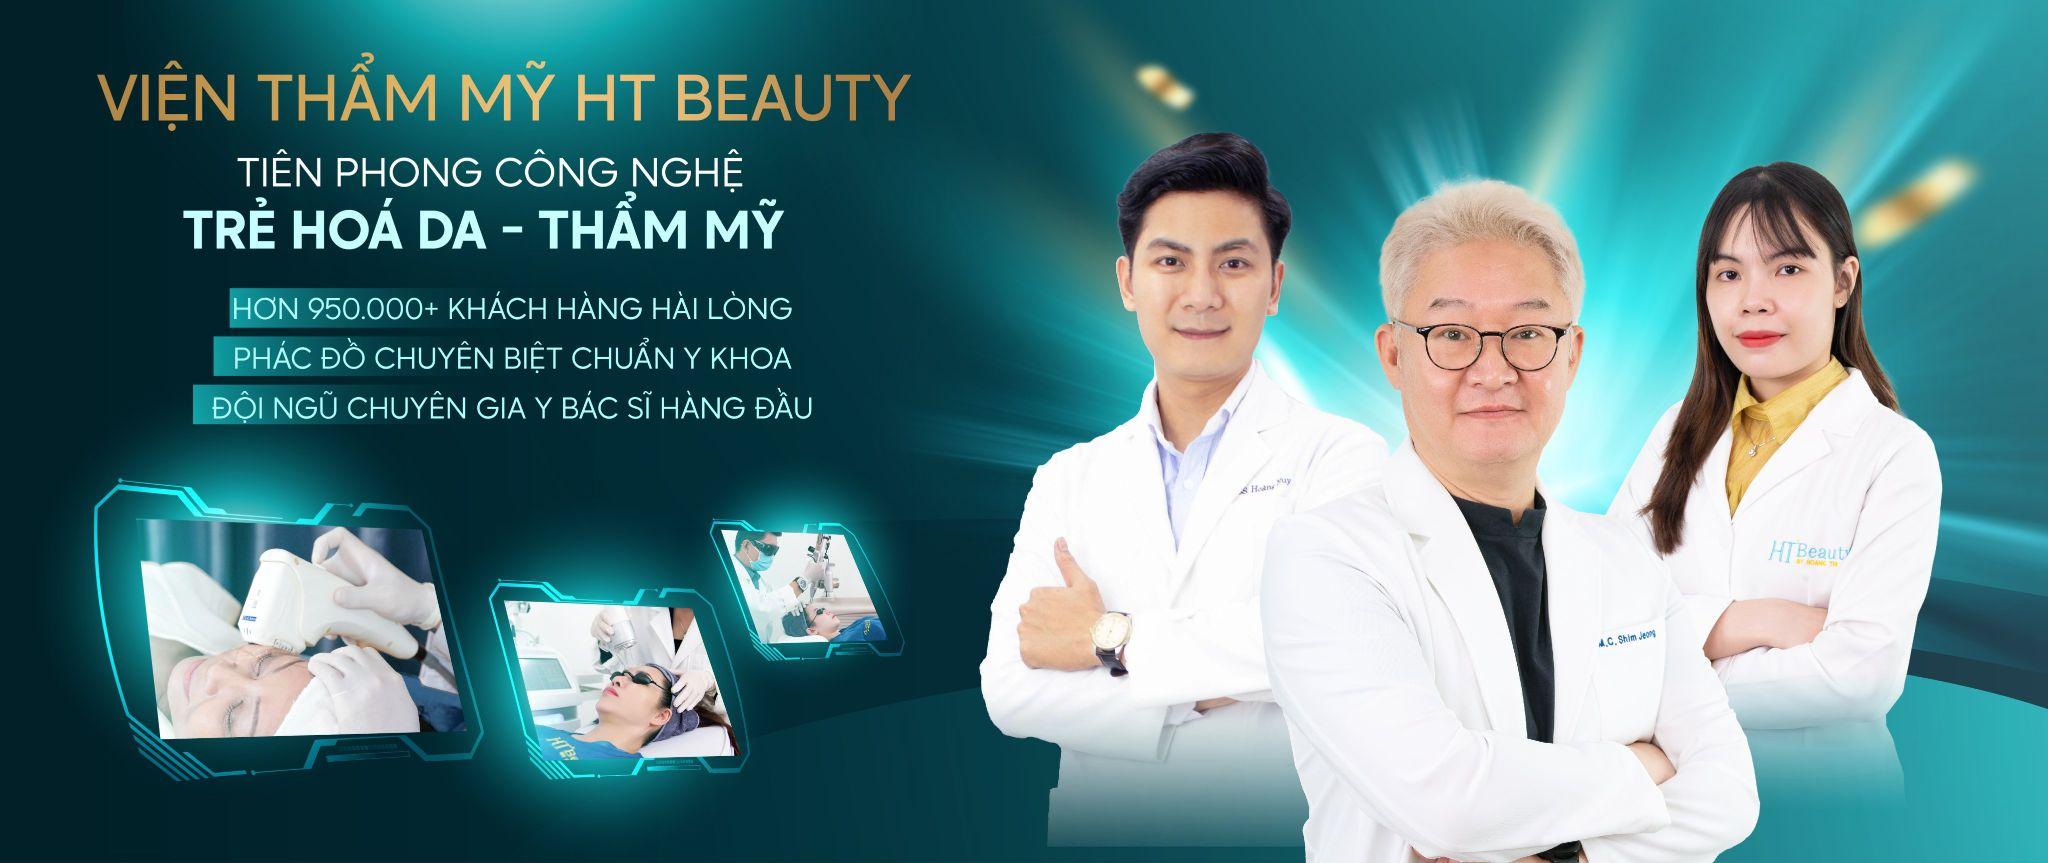 Chính thức ra mắt Phòng khám chuyên khoa da liễu Viện thẩm mỹ HT Beauty - 10 năm 1 hành trình kiến tạo nét đẹp Việt - ảnh 1